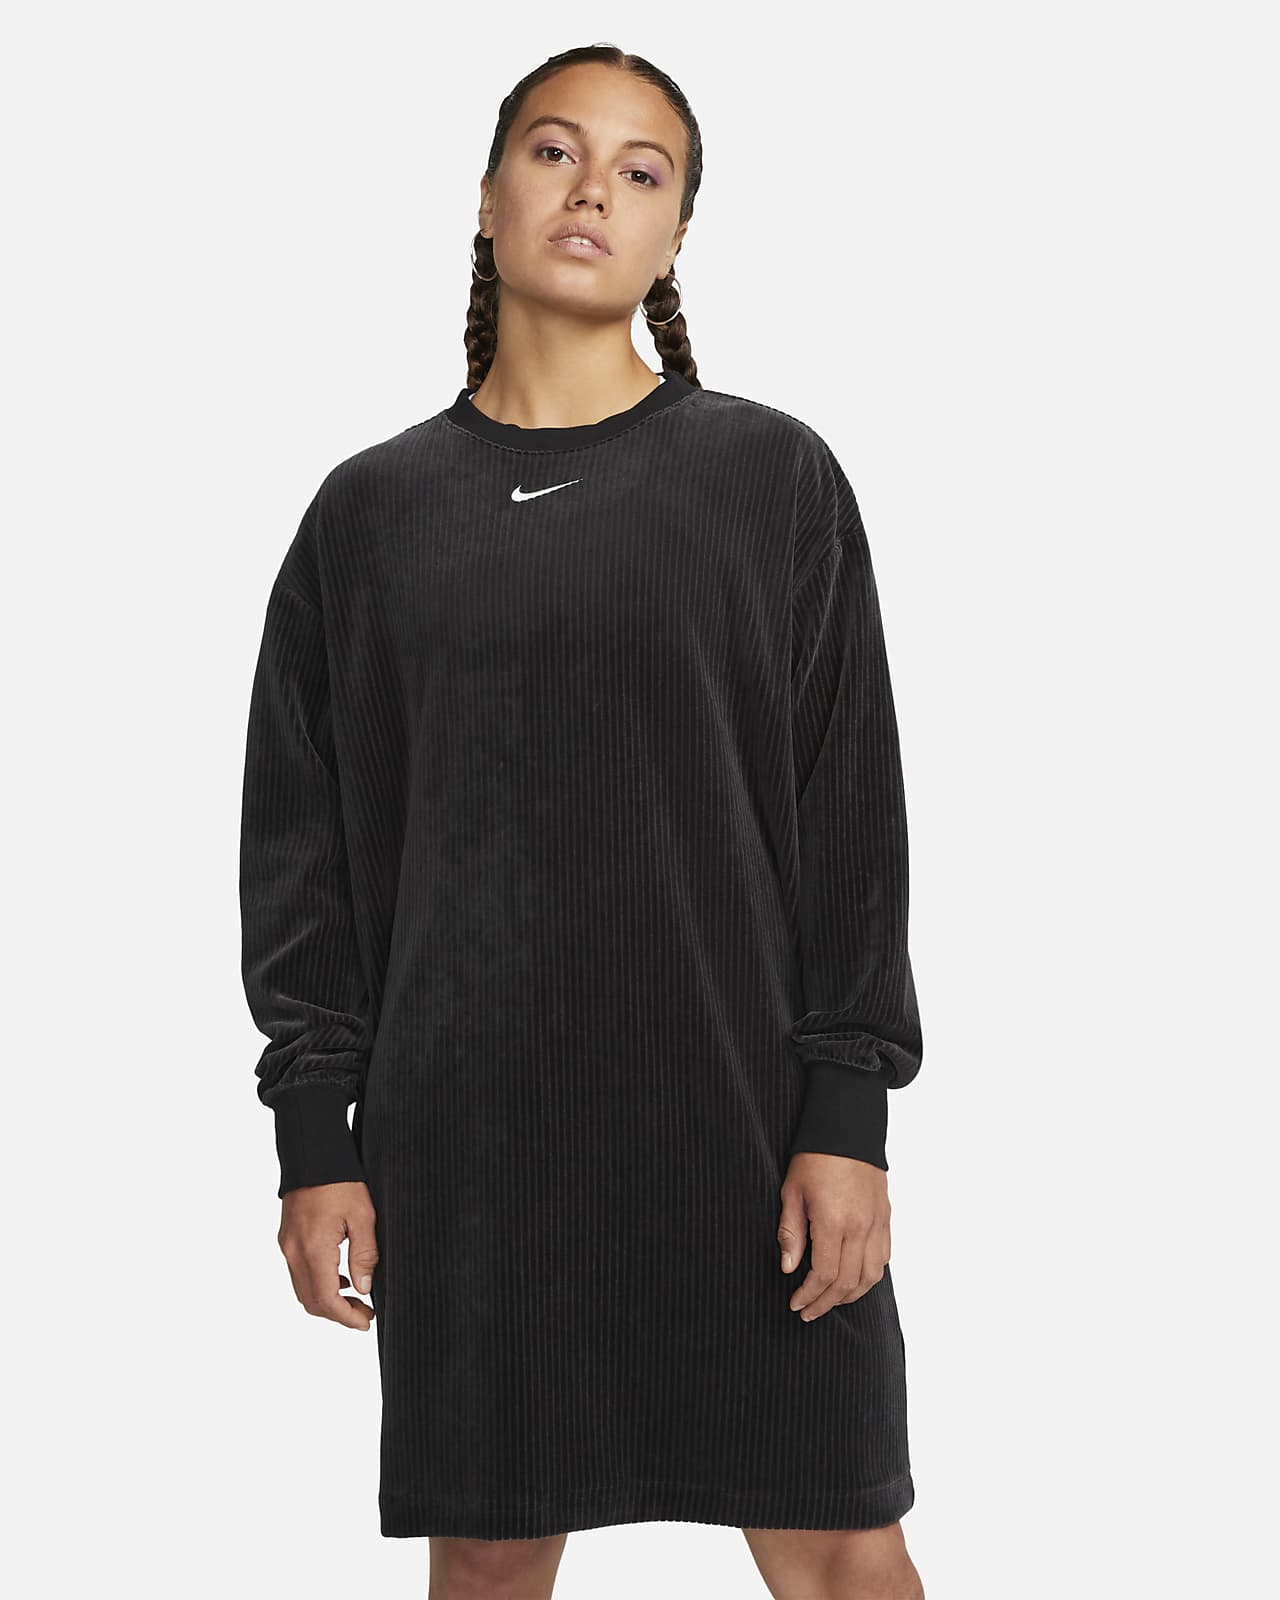 Nike Sportswear Women's Velour Long-Sleeve Crew-Neck Dress